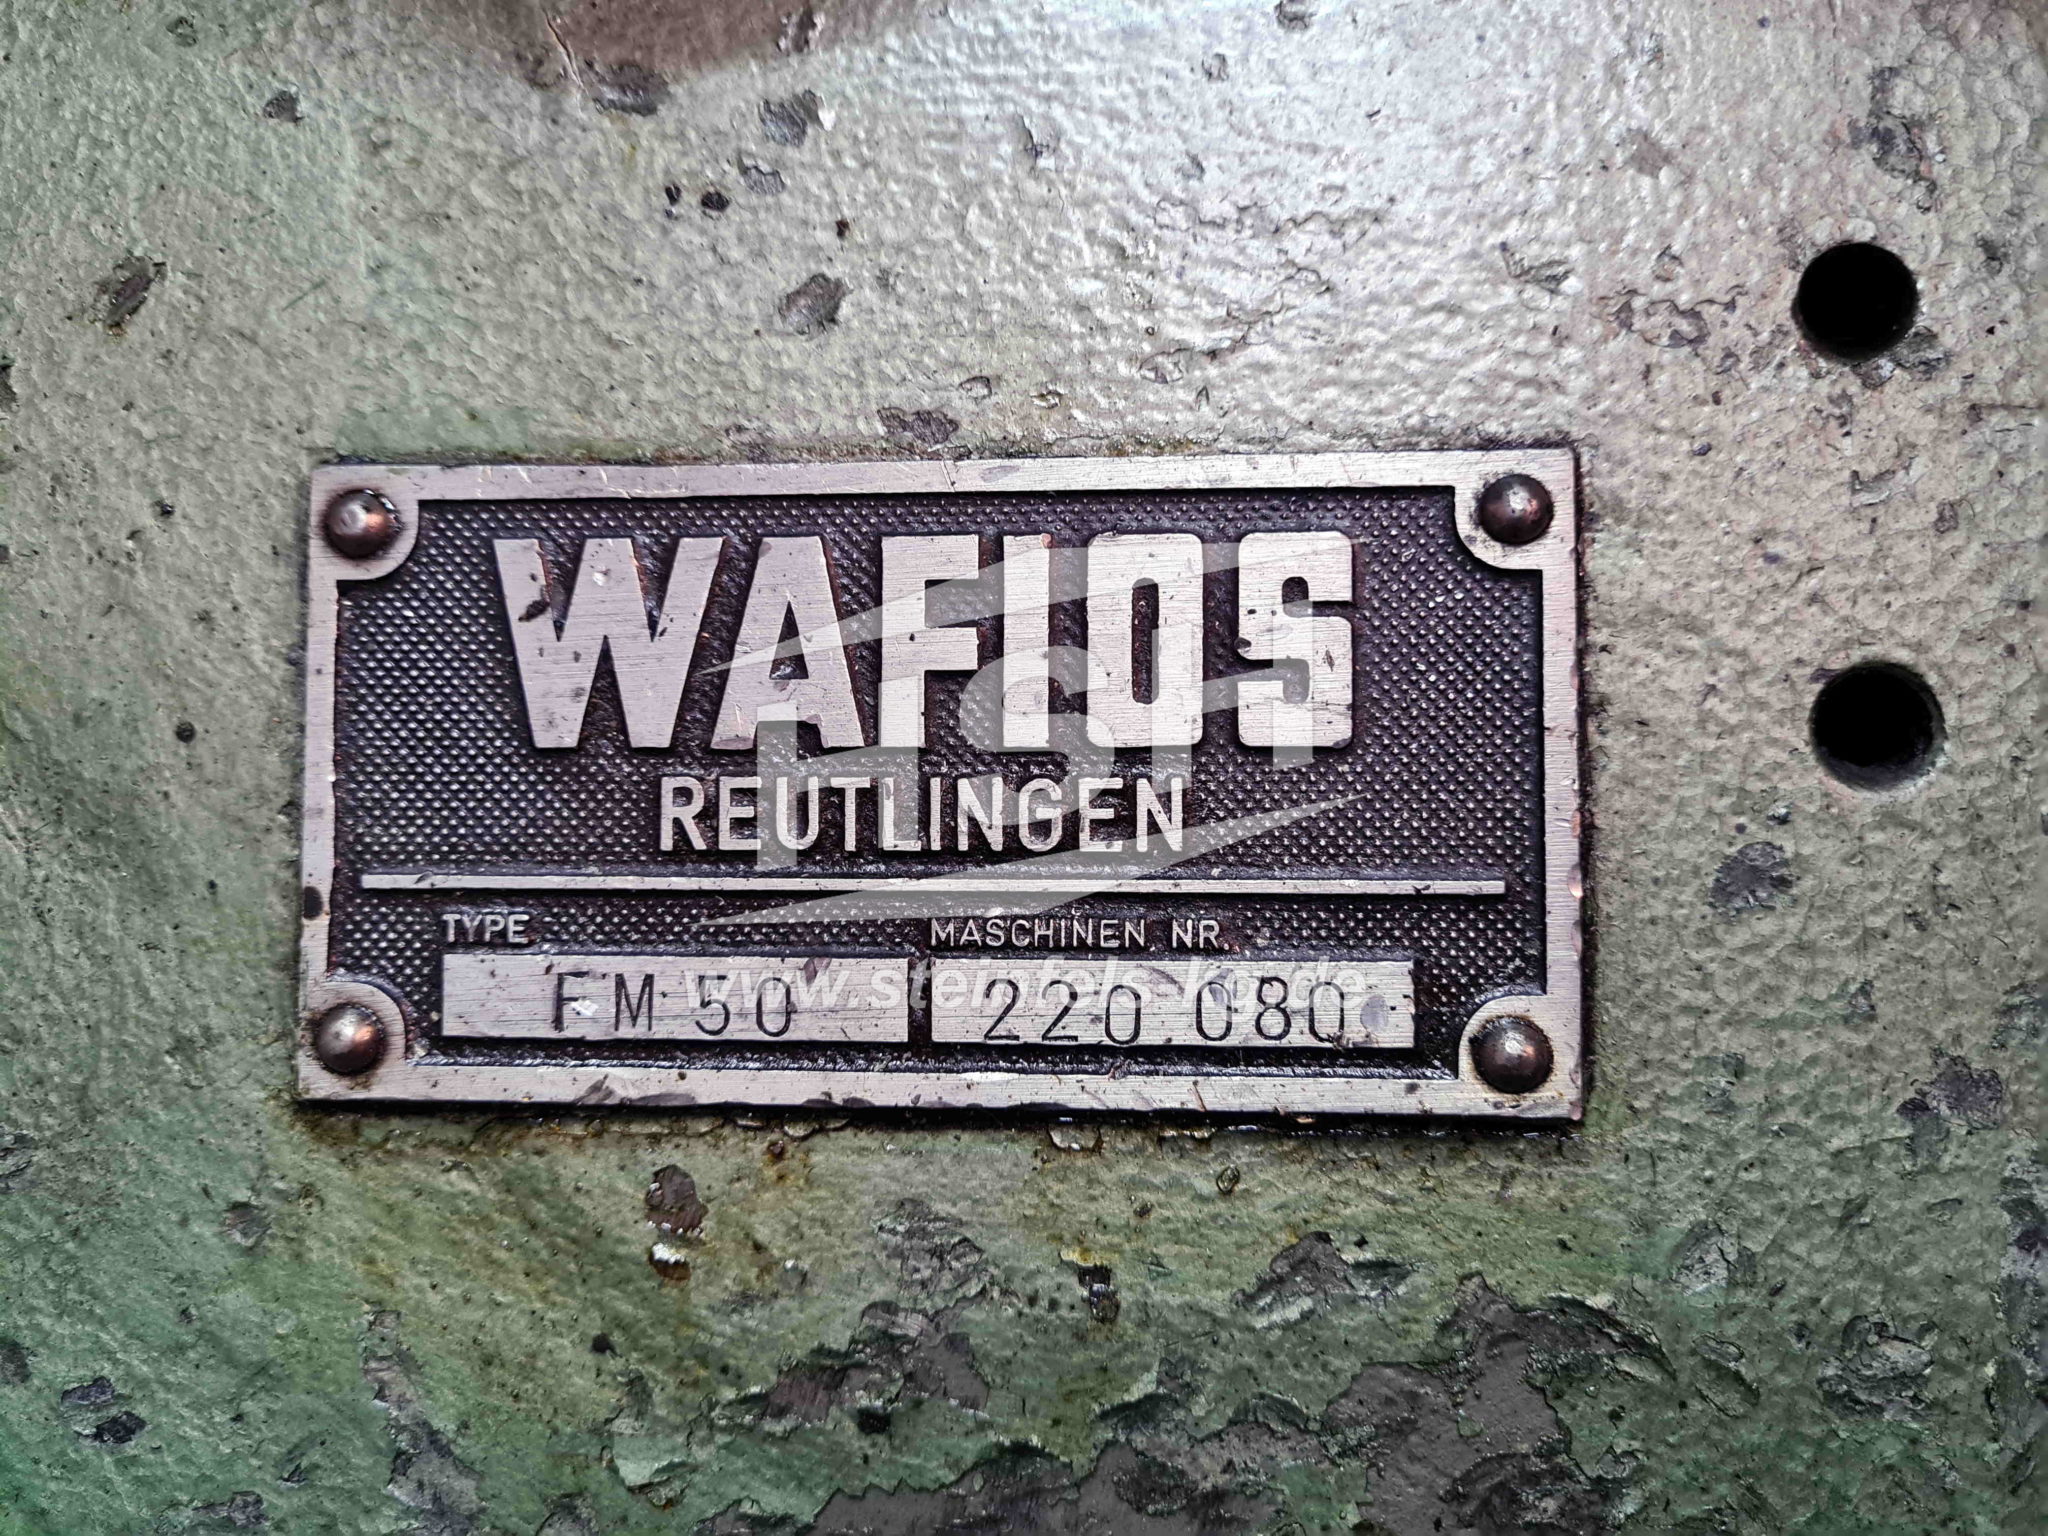 D32I/7989 – WAFIOS – FM50 – 1965 – 1-5 mm